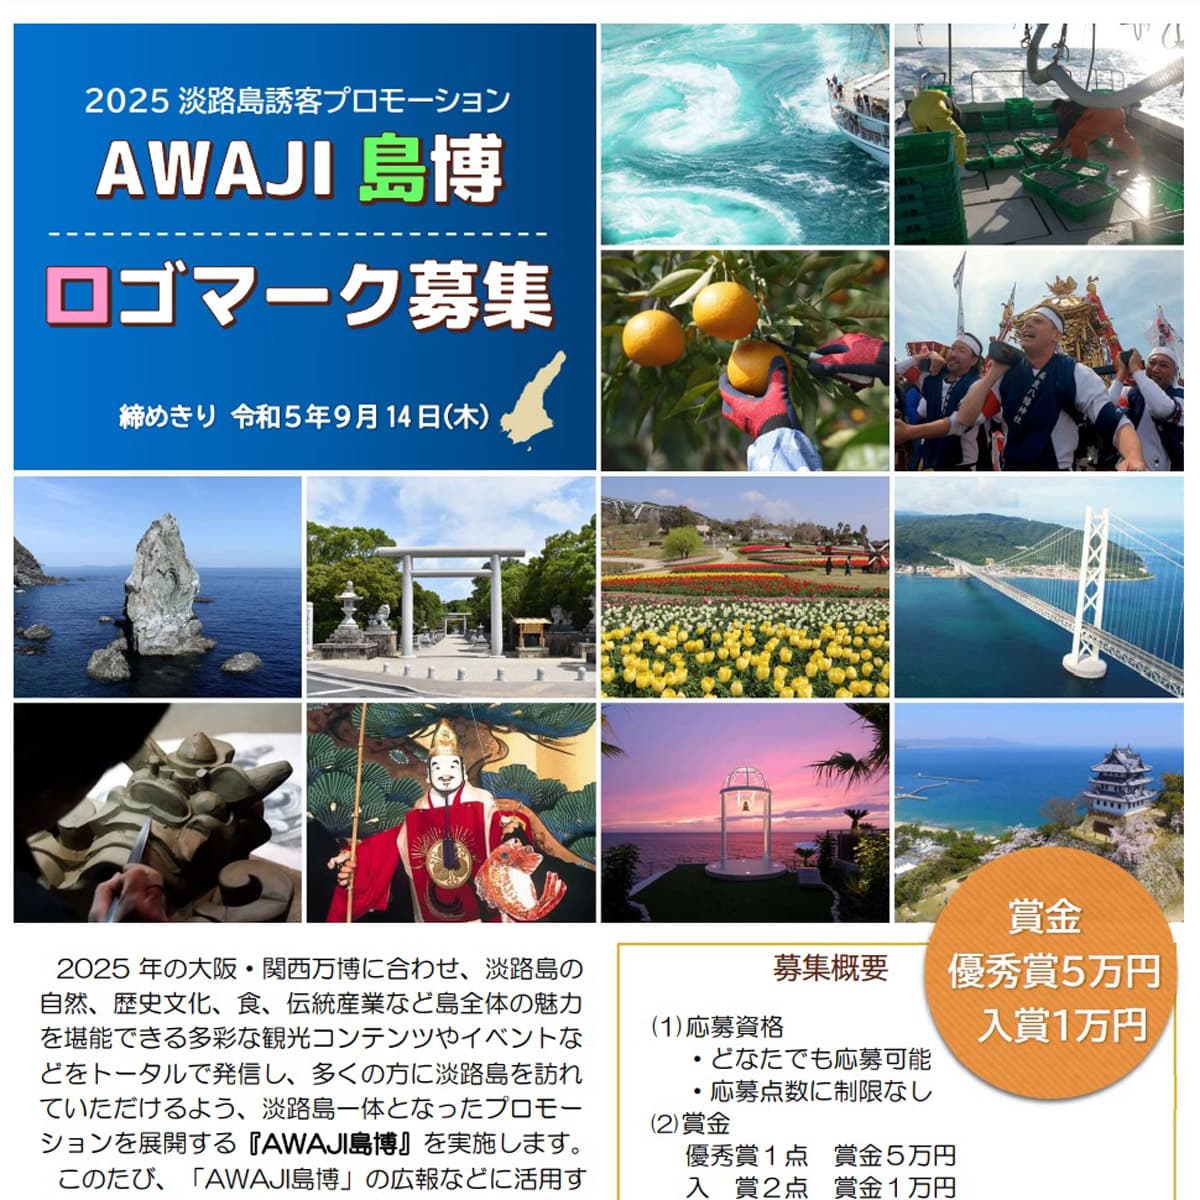 ロゴマークデザイン募集「AWAJI島博」淡路島一体プロモーション